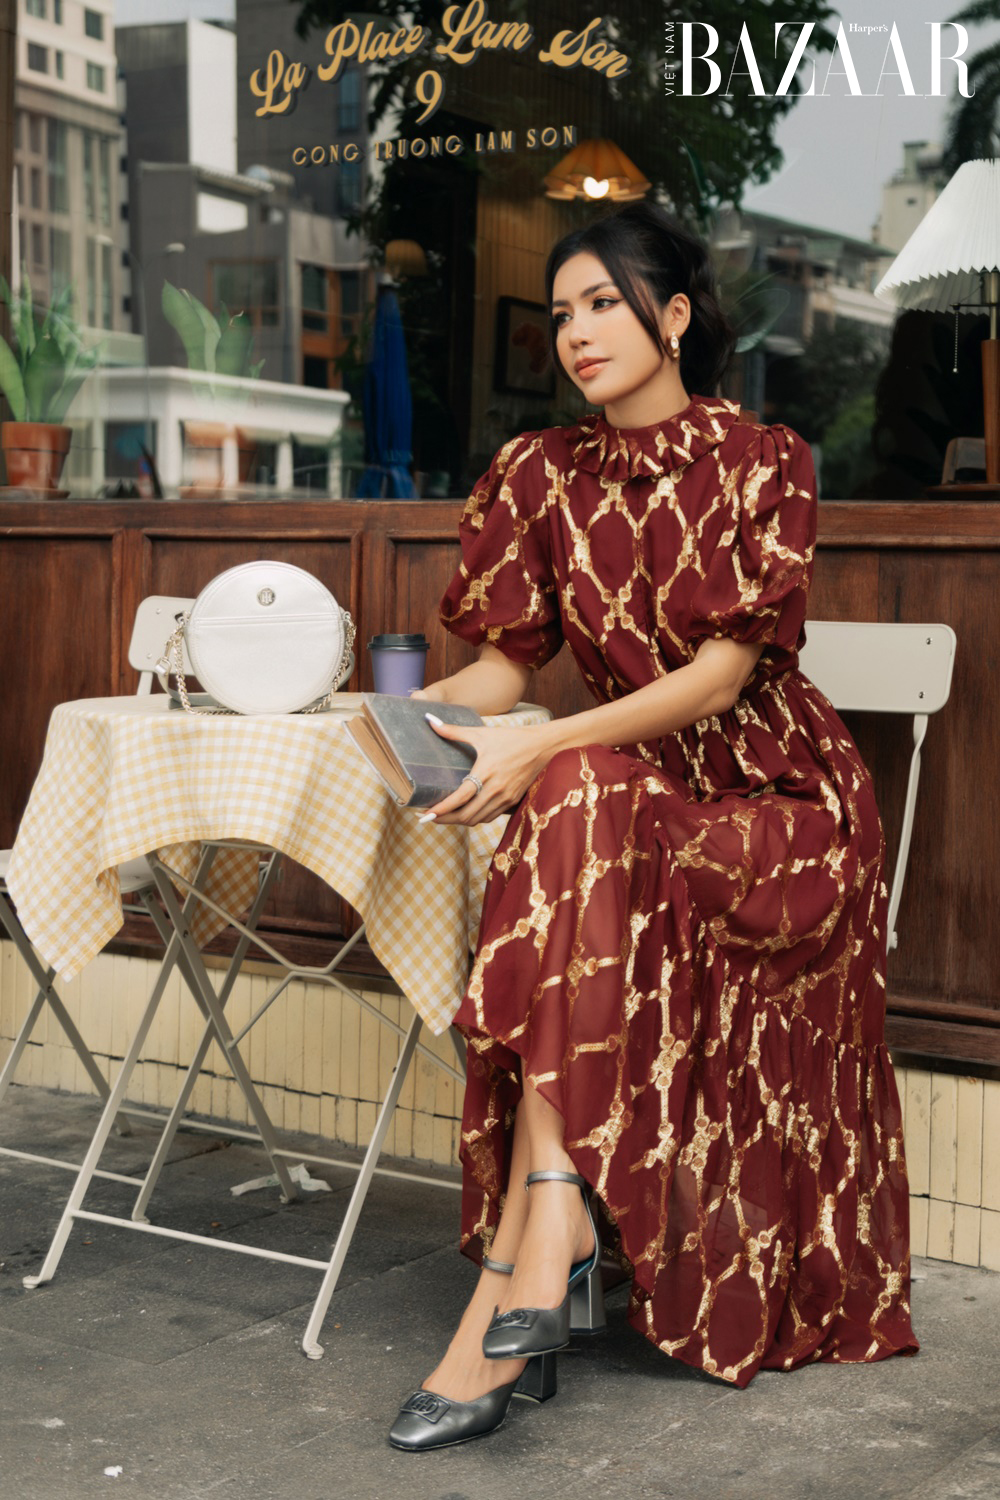 Harper's Bazaar_Siêu mẫu Minh Tú dạo phố ngày Tết_2